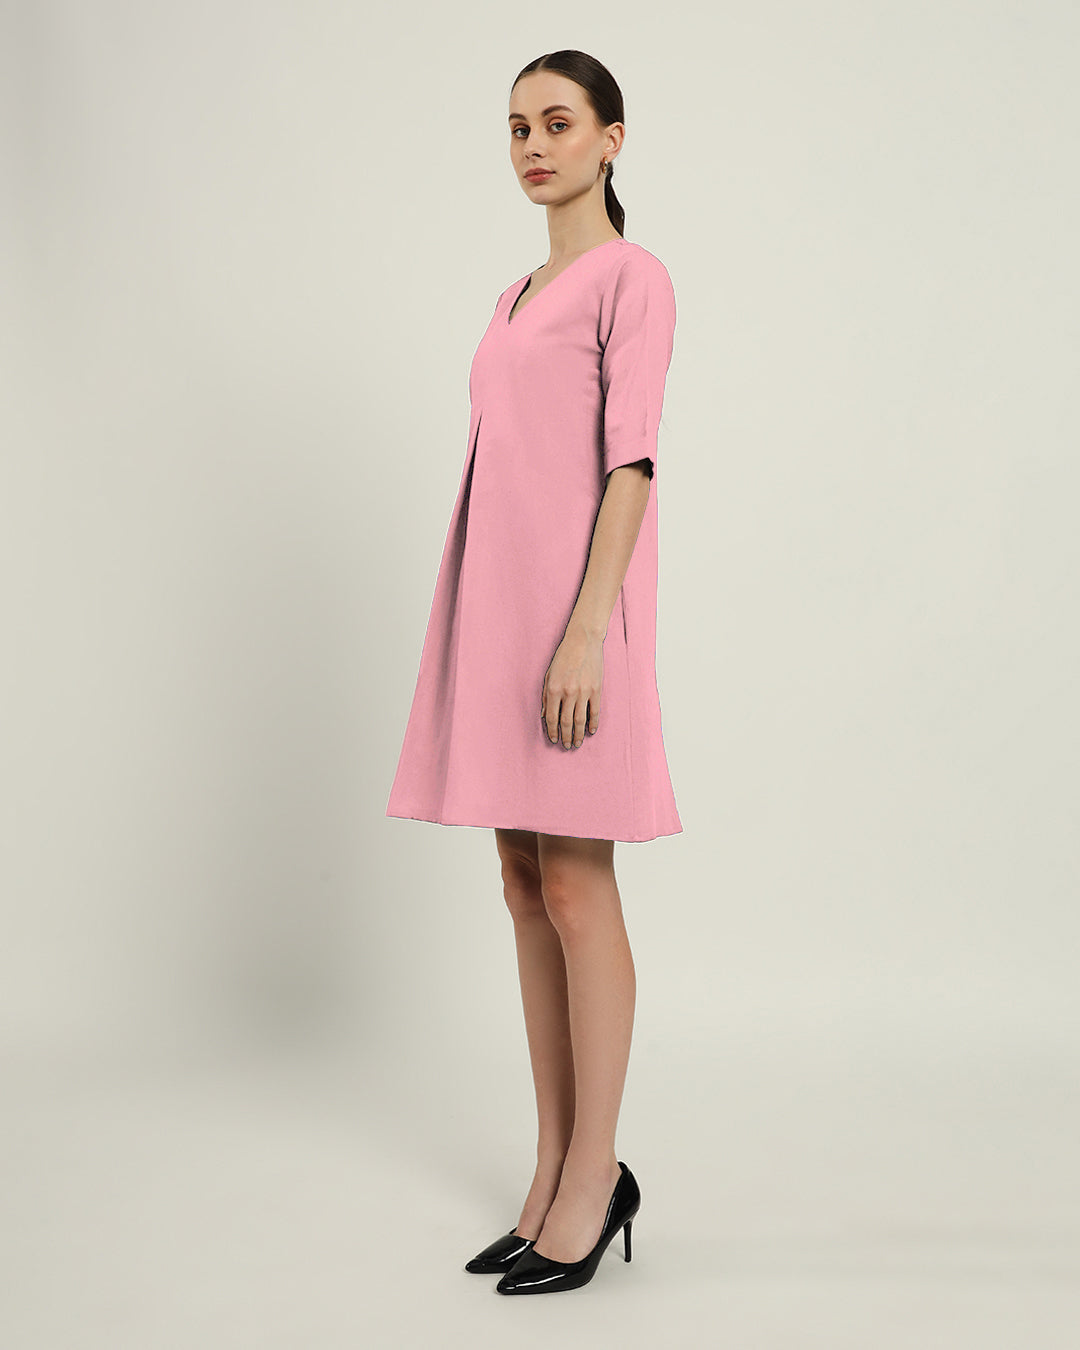 The Giza Fondant Pink Dress